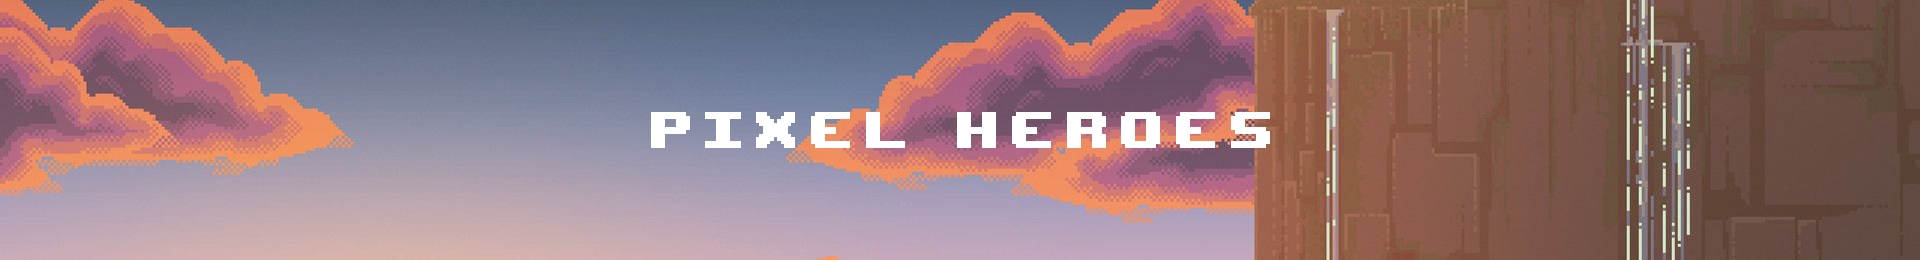 Pixel Heroes by Bardo banner